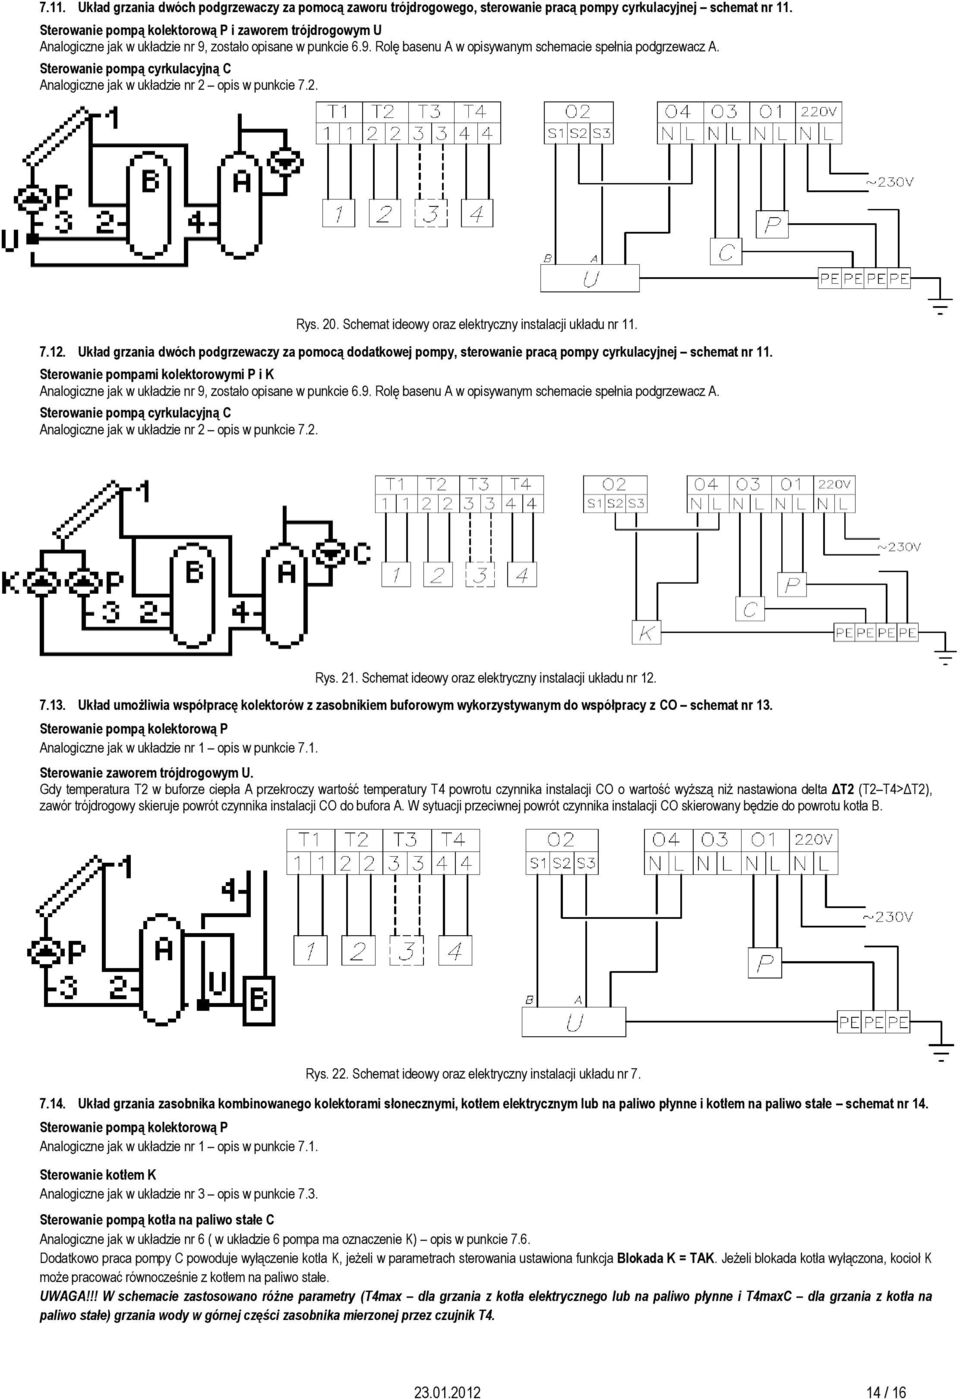 Schemat ideowy oraz elektryczny instalacji układu nr 11. 7.12. Układ grzania dwóch podgrzewaczy za pomocą dodatkowej pompy, sterowanie pracą pompy cyrkulacyjnej schemat nr 11.